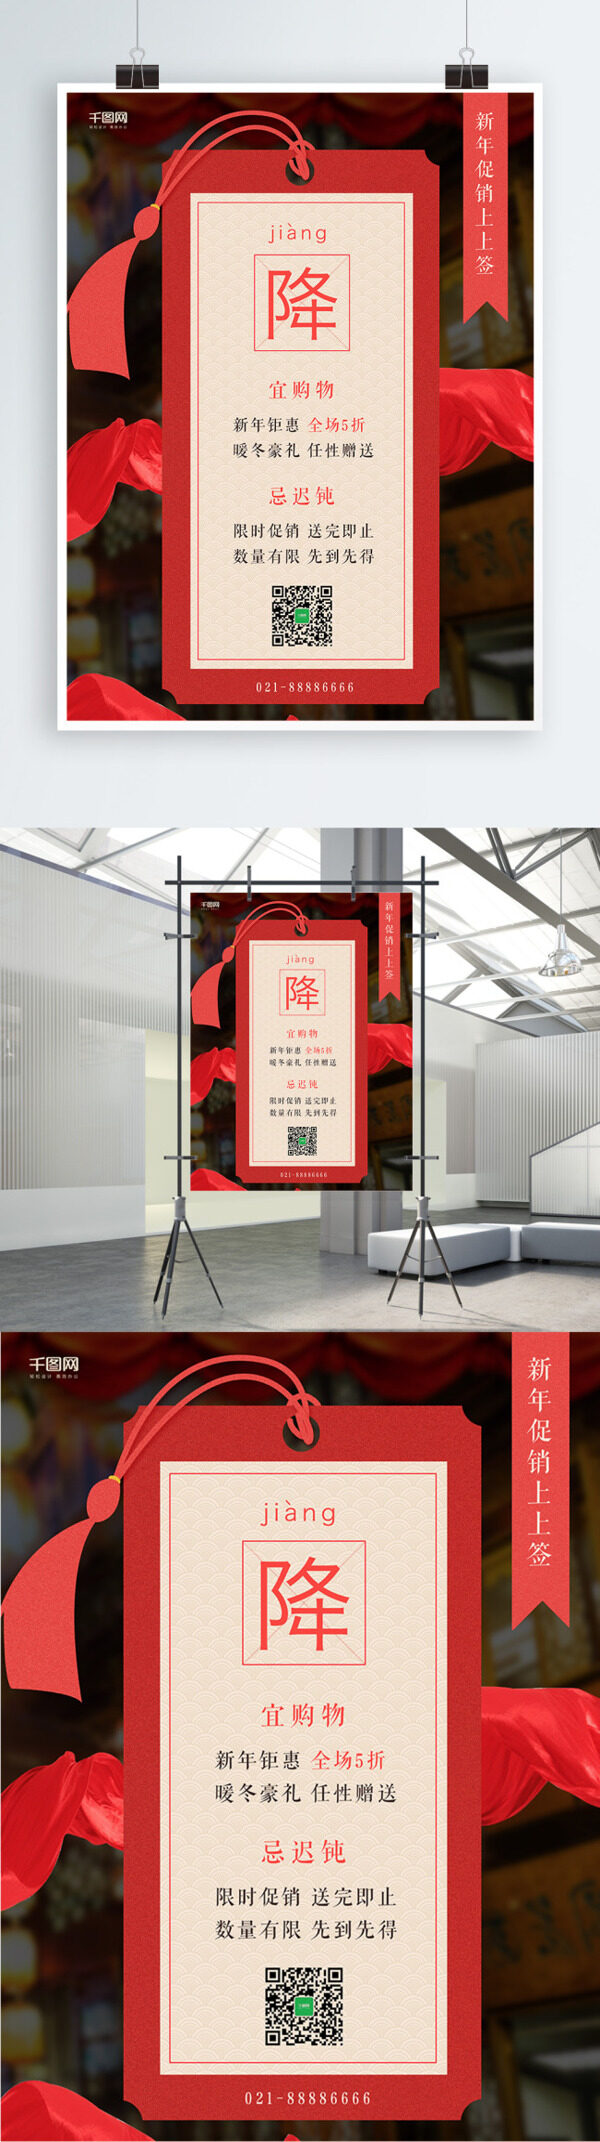 2018新春创意中国风标签降价促销海报